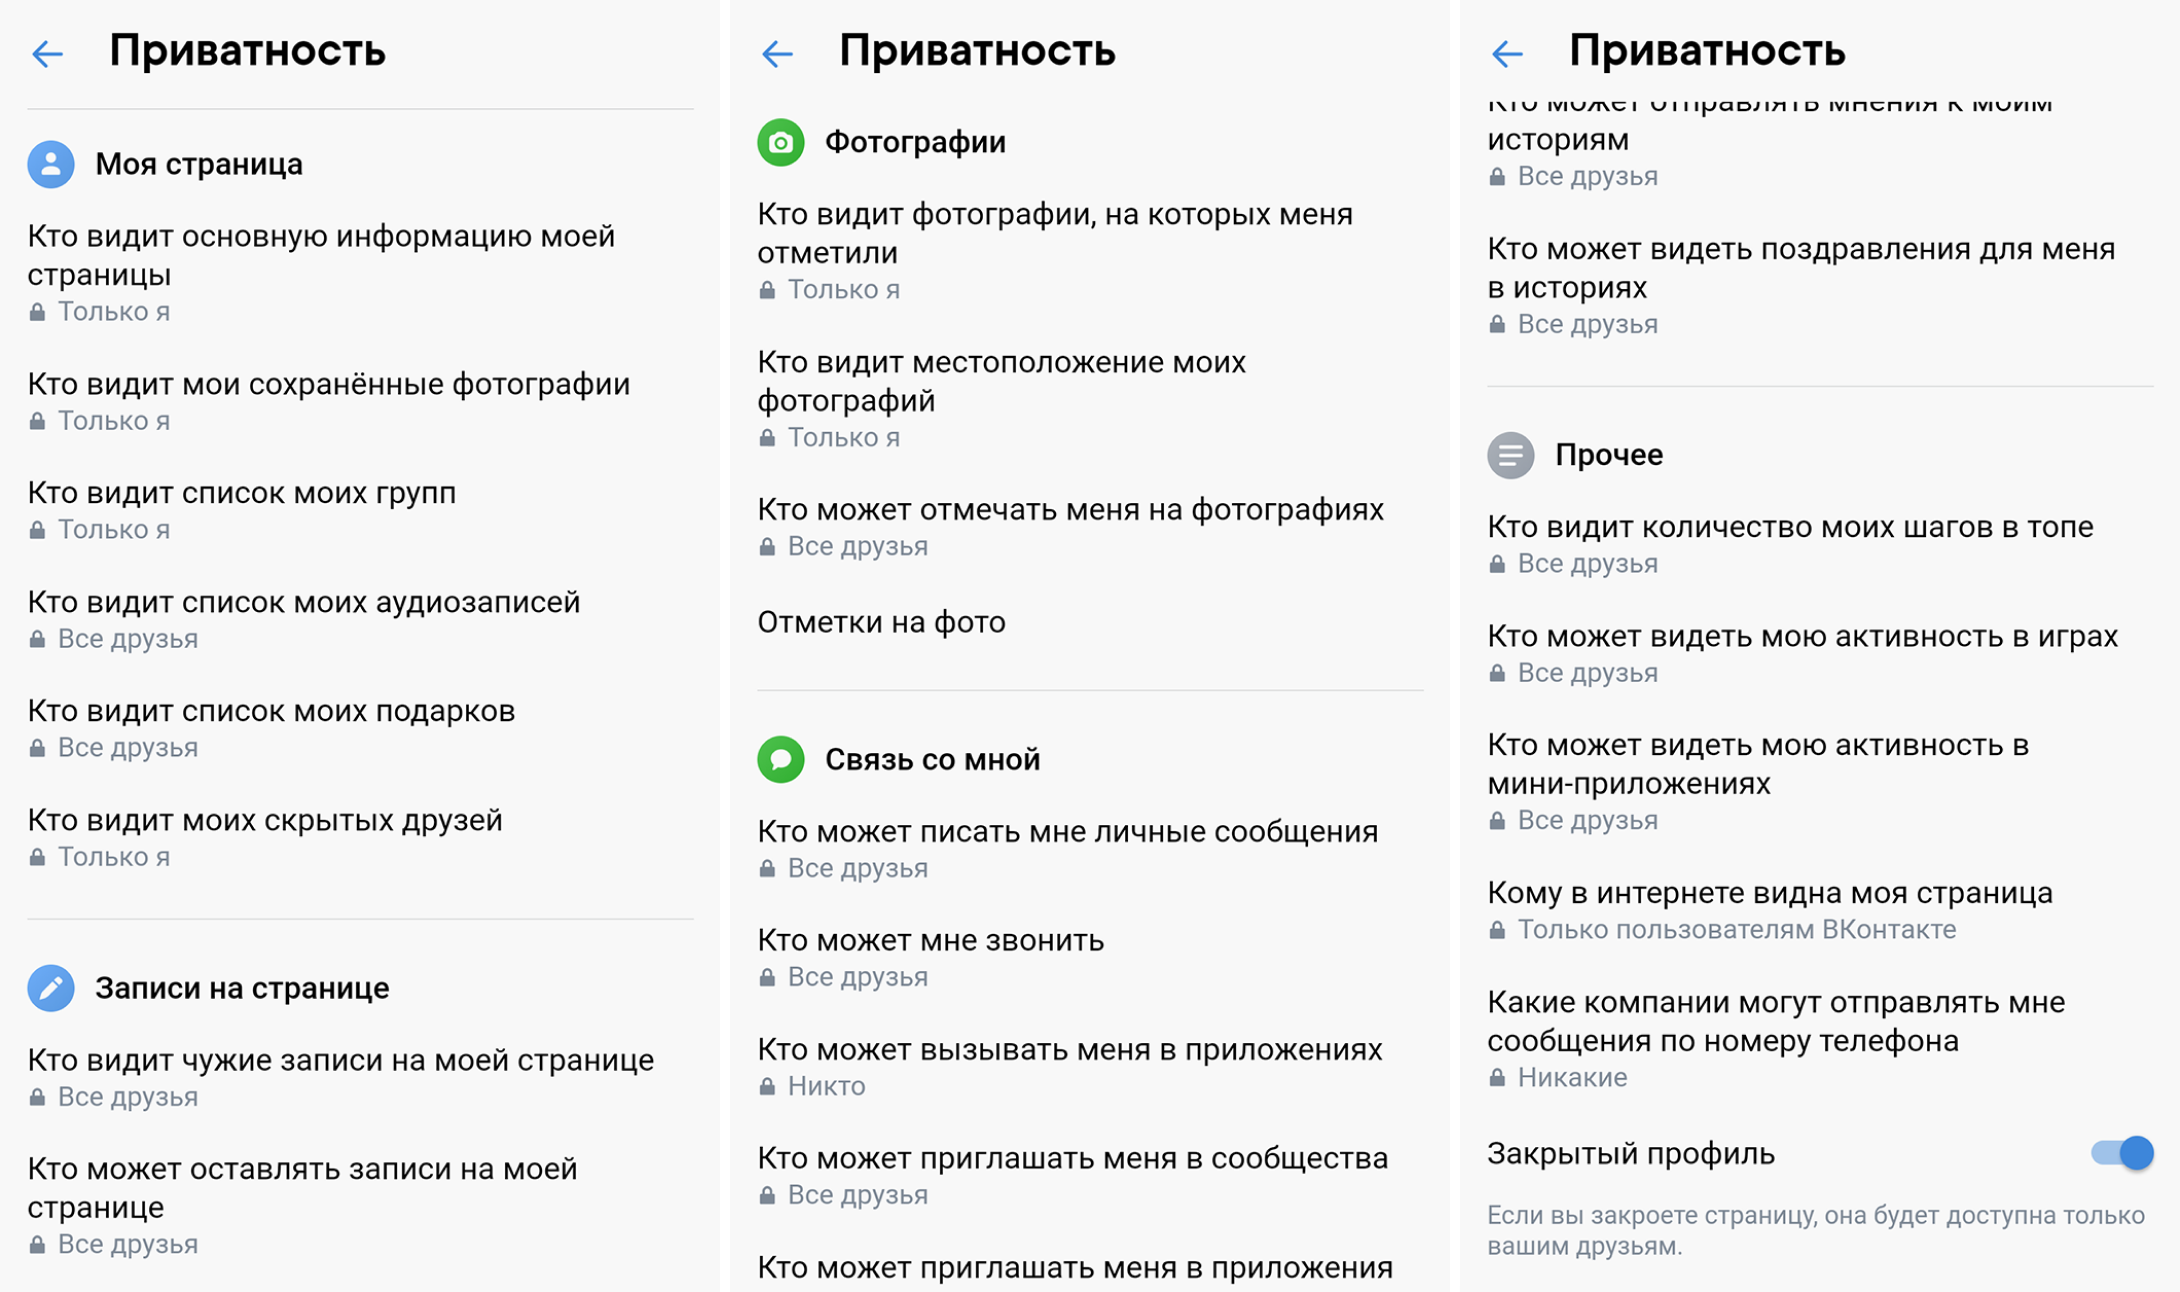 На примере «Вконтакте» покажу, как я защитил свои соцсети. Часть информации недоступна даже моим друзьям: например, это отметки на фотографиях и геолокация. Еще я запретил компаниям мне писать